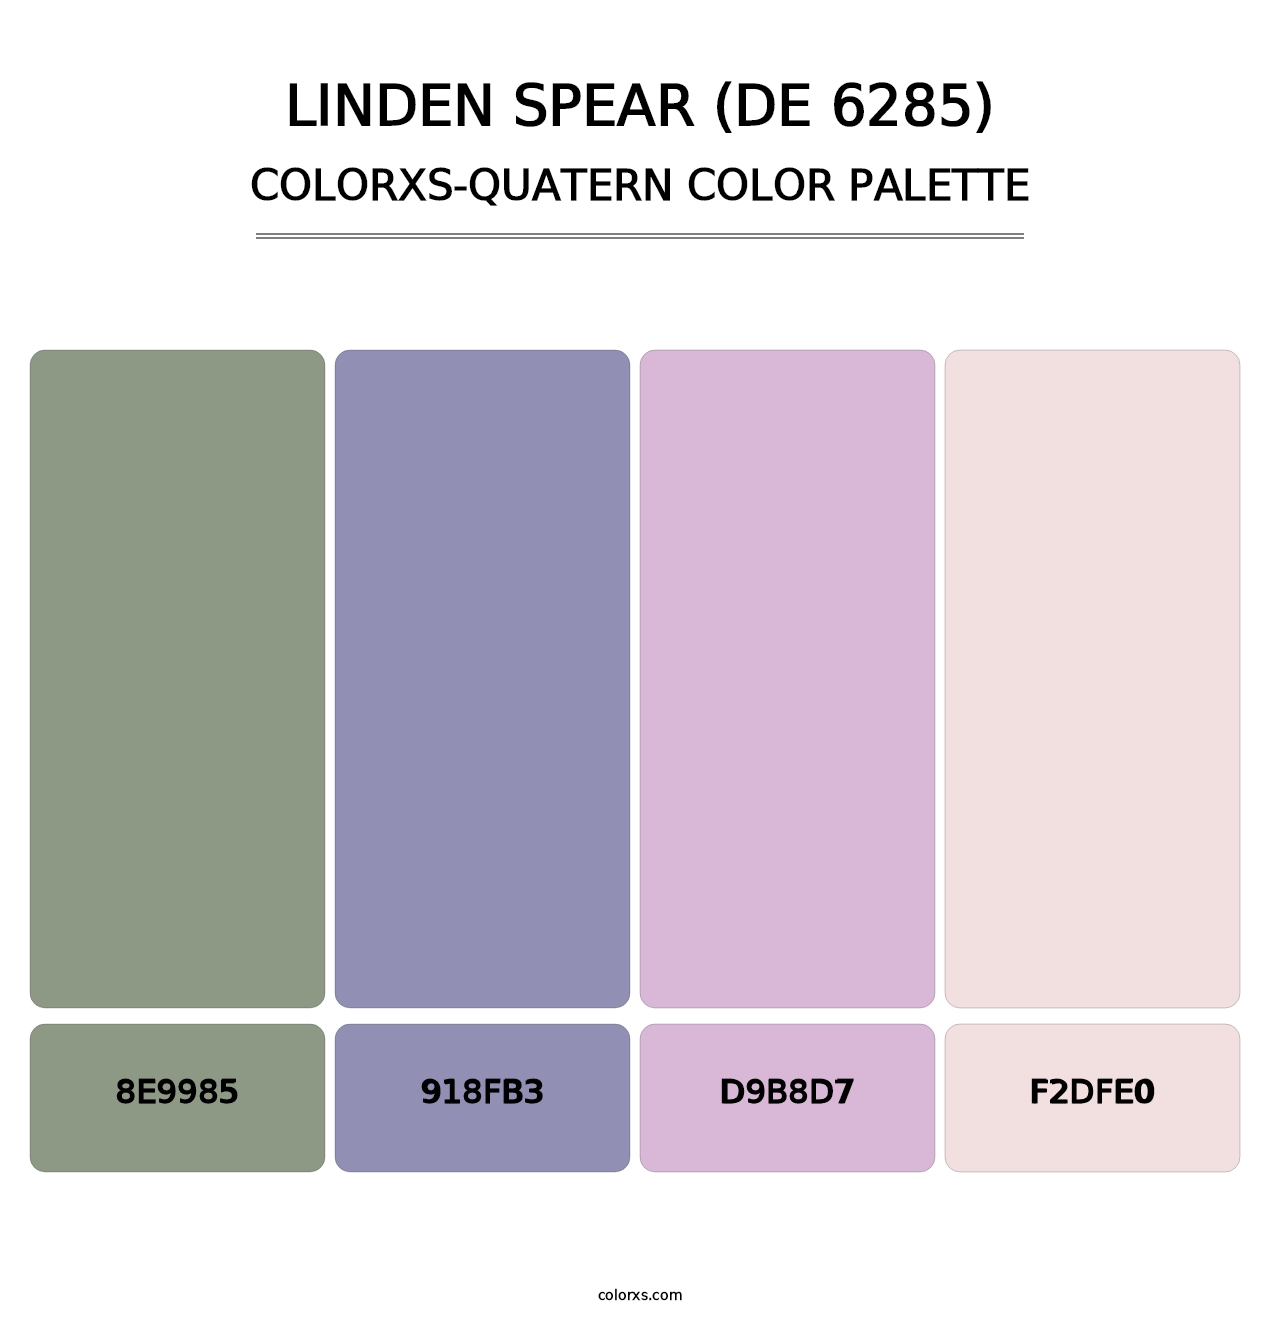 Linden Spear (DE 6285) - Colorxs Quatern Palette